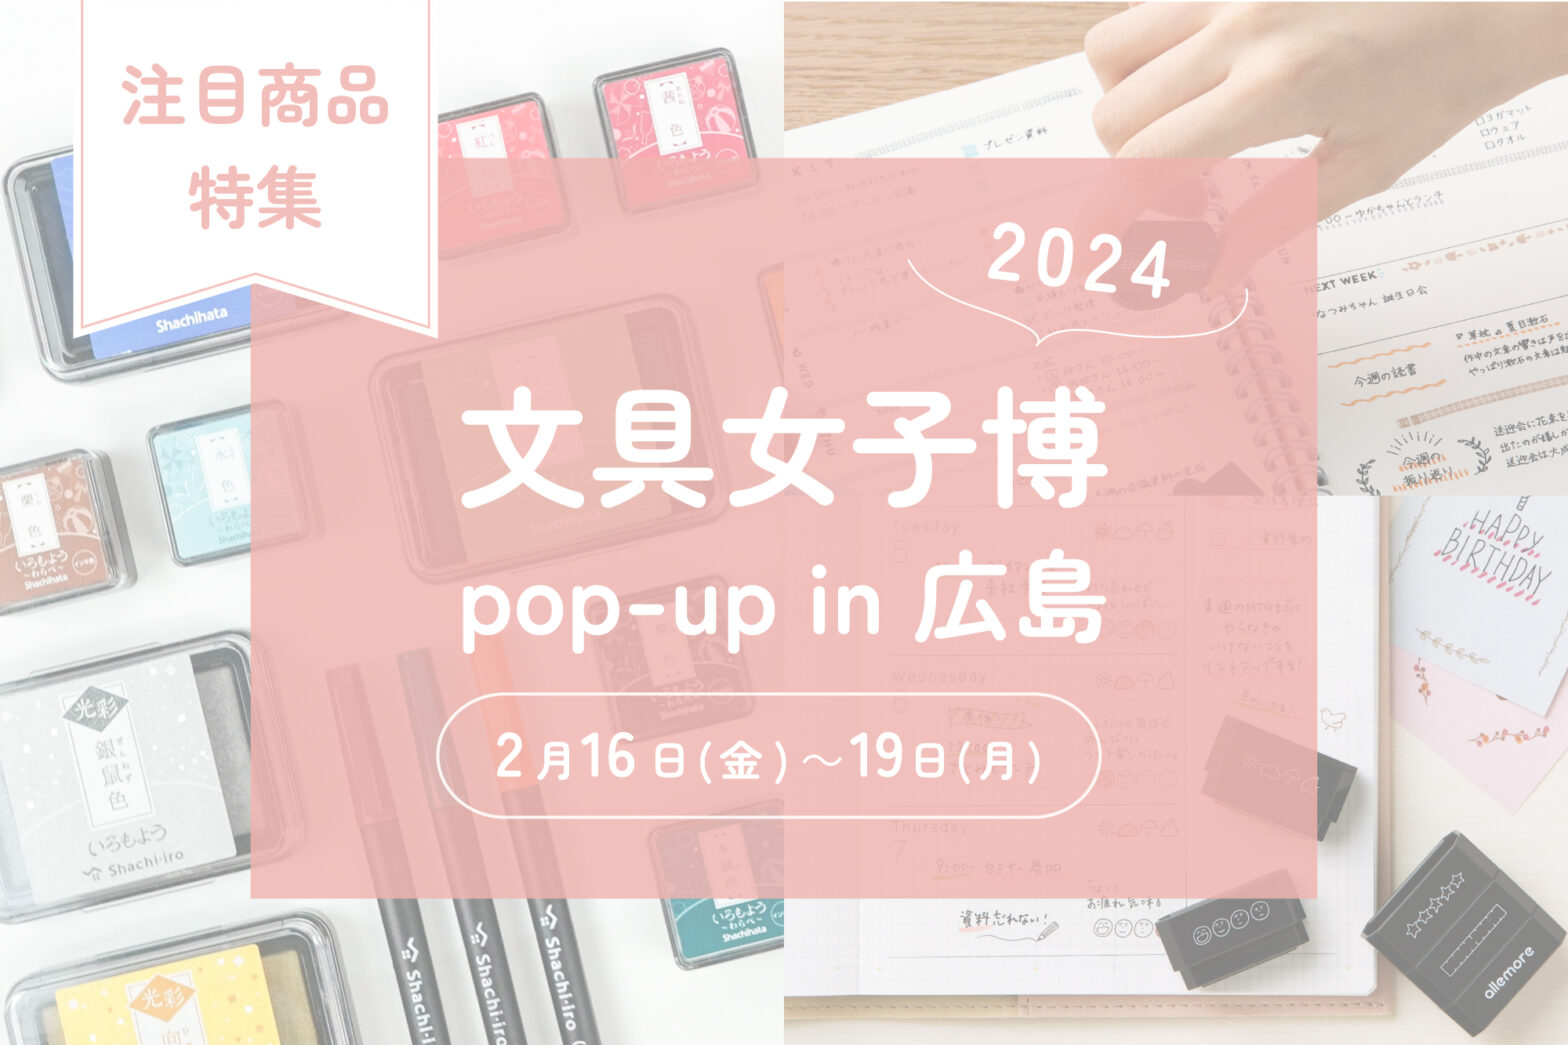 シヤチハタ 文具女子博 pop-up in 広島2024